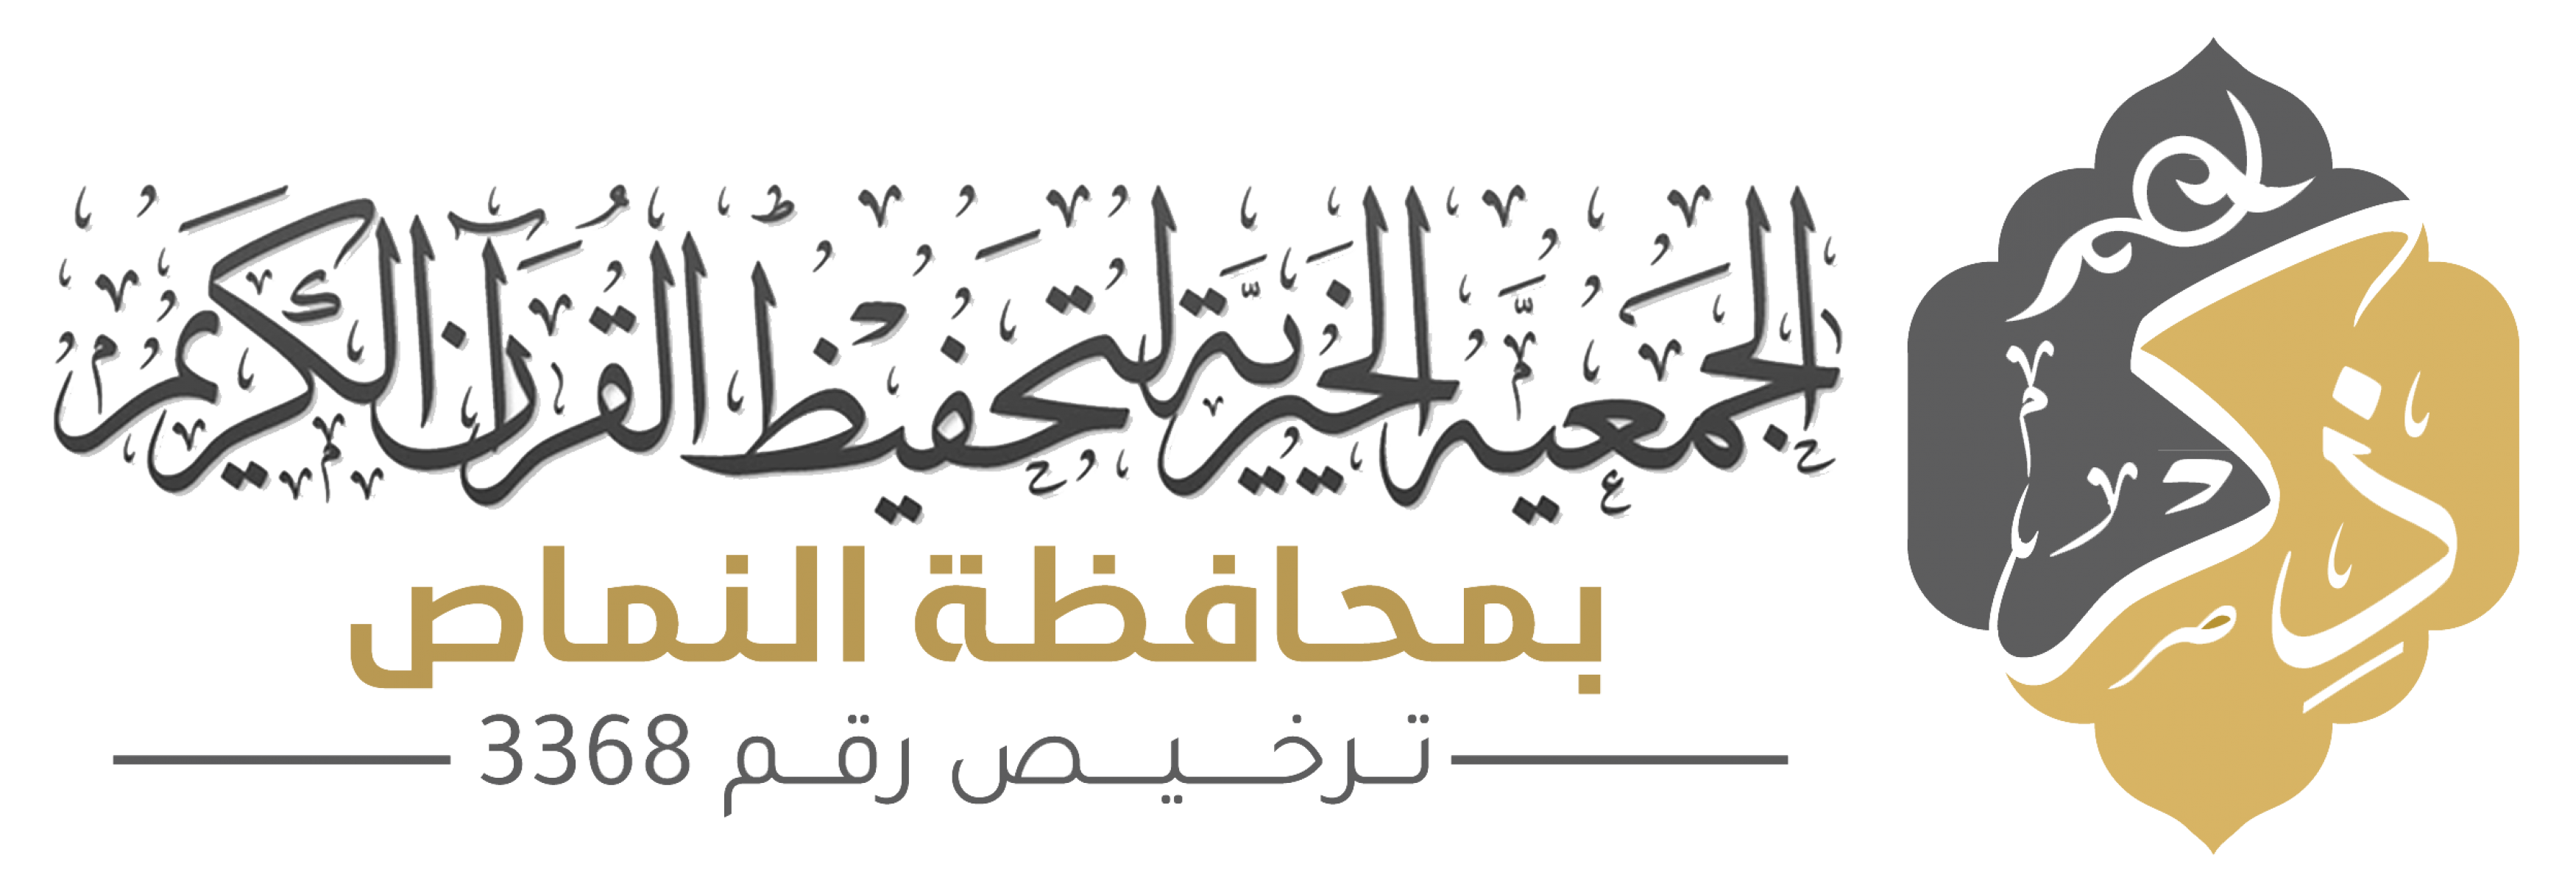 الجمعية الخيرية لتحفيظ القرآن الكريم بمحافظة النماص